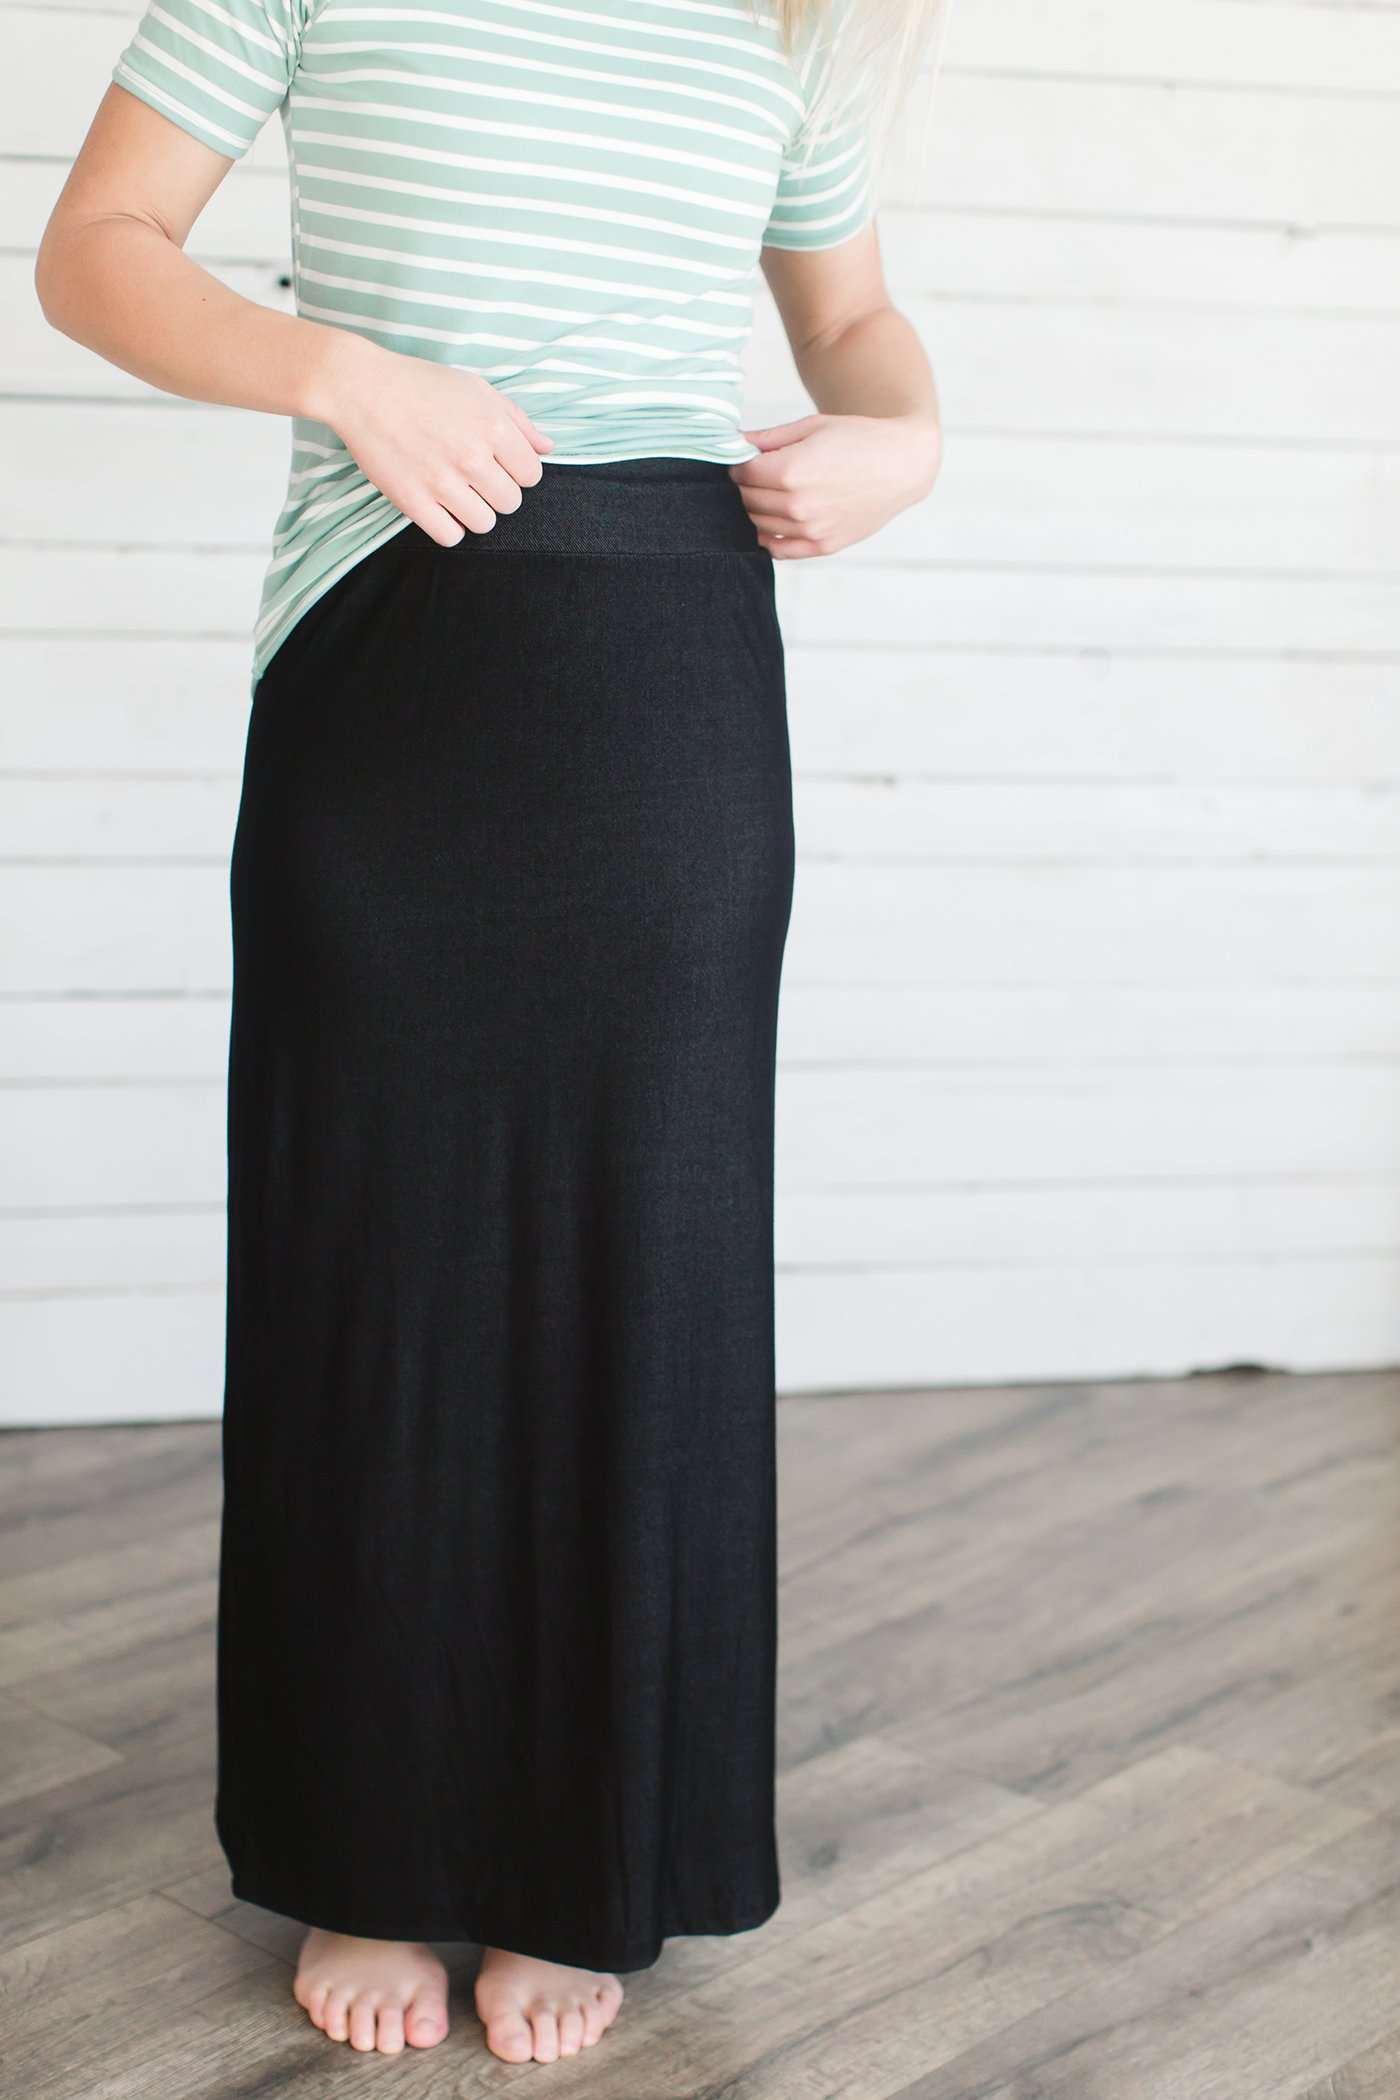 Women's modest denim-like knit skirt in black or navy.